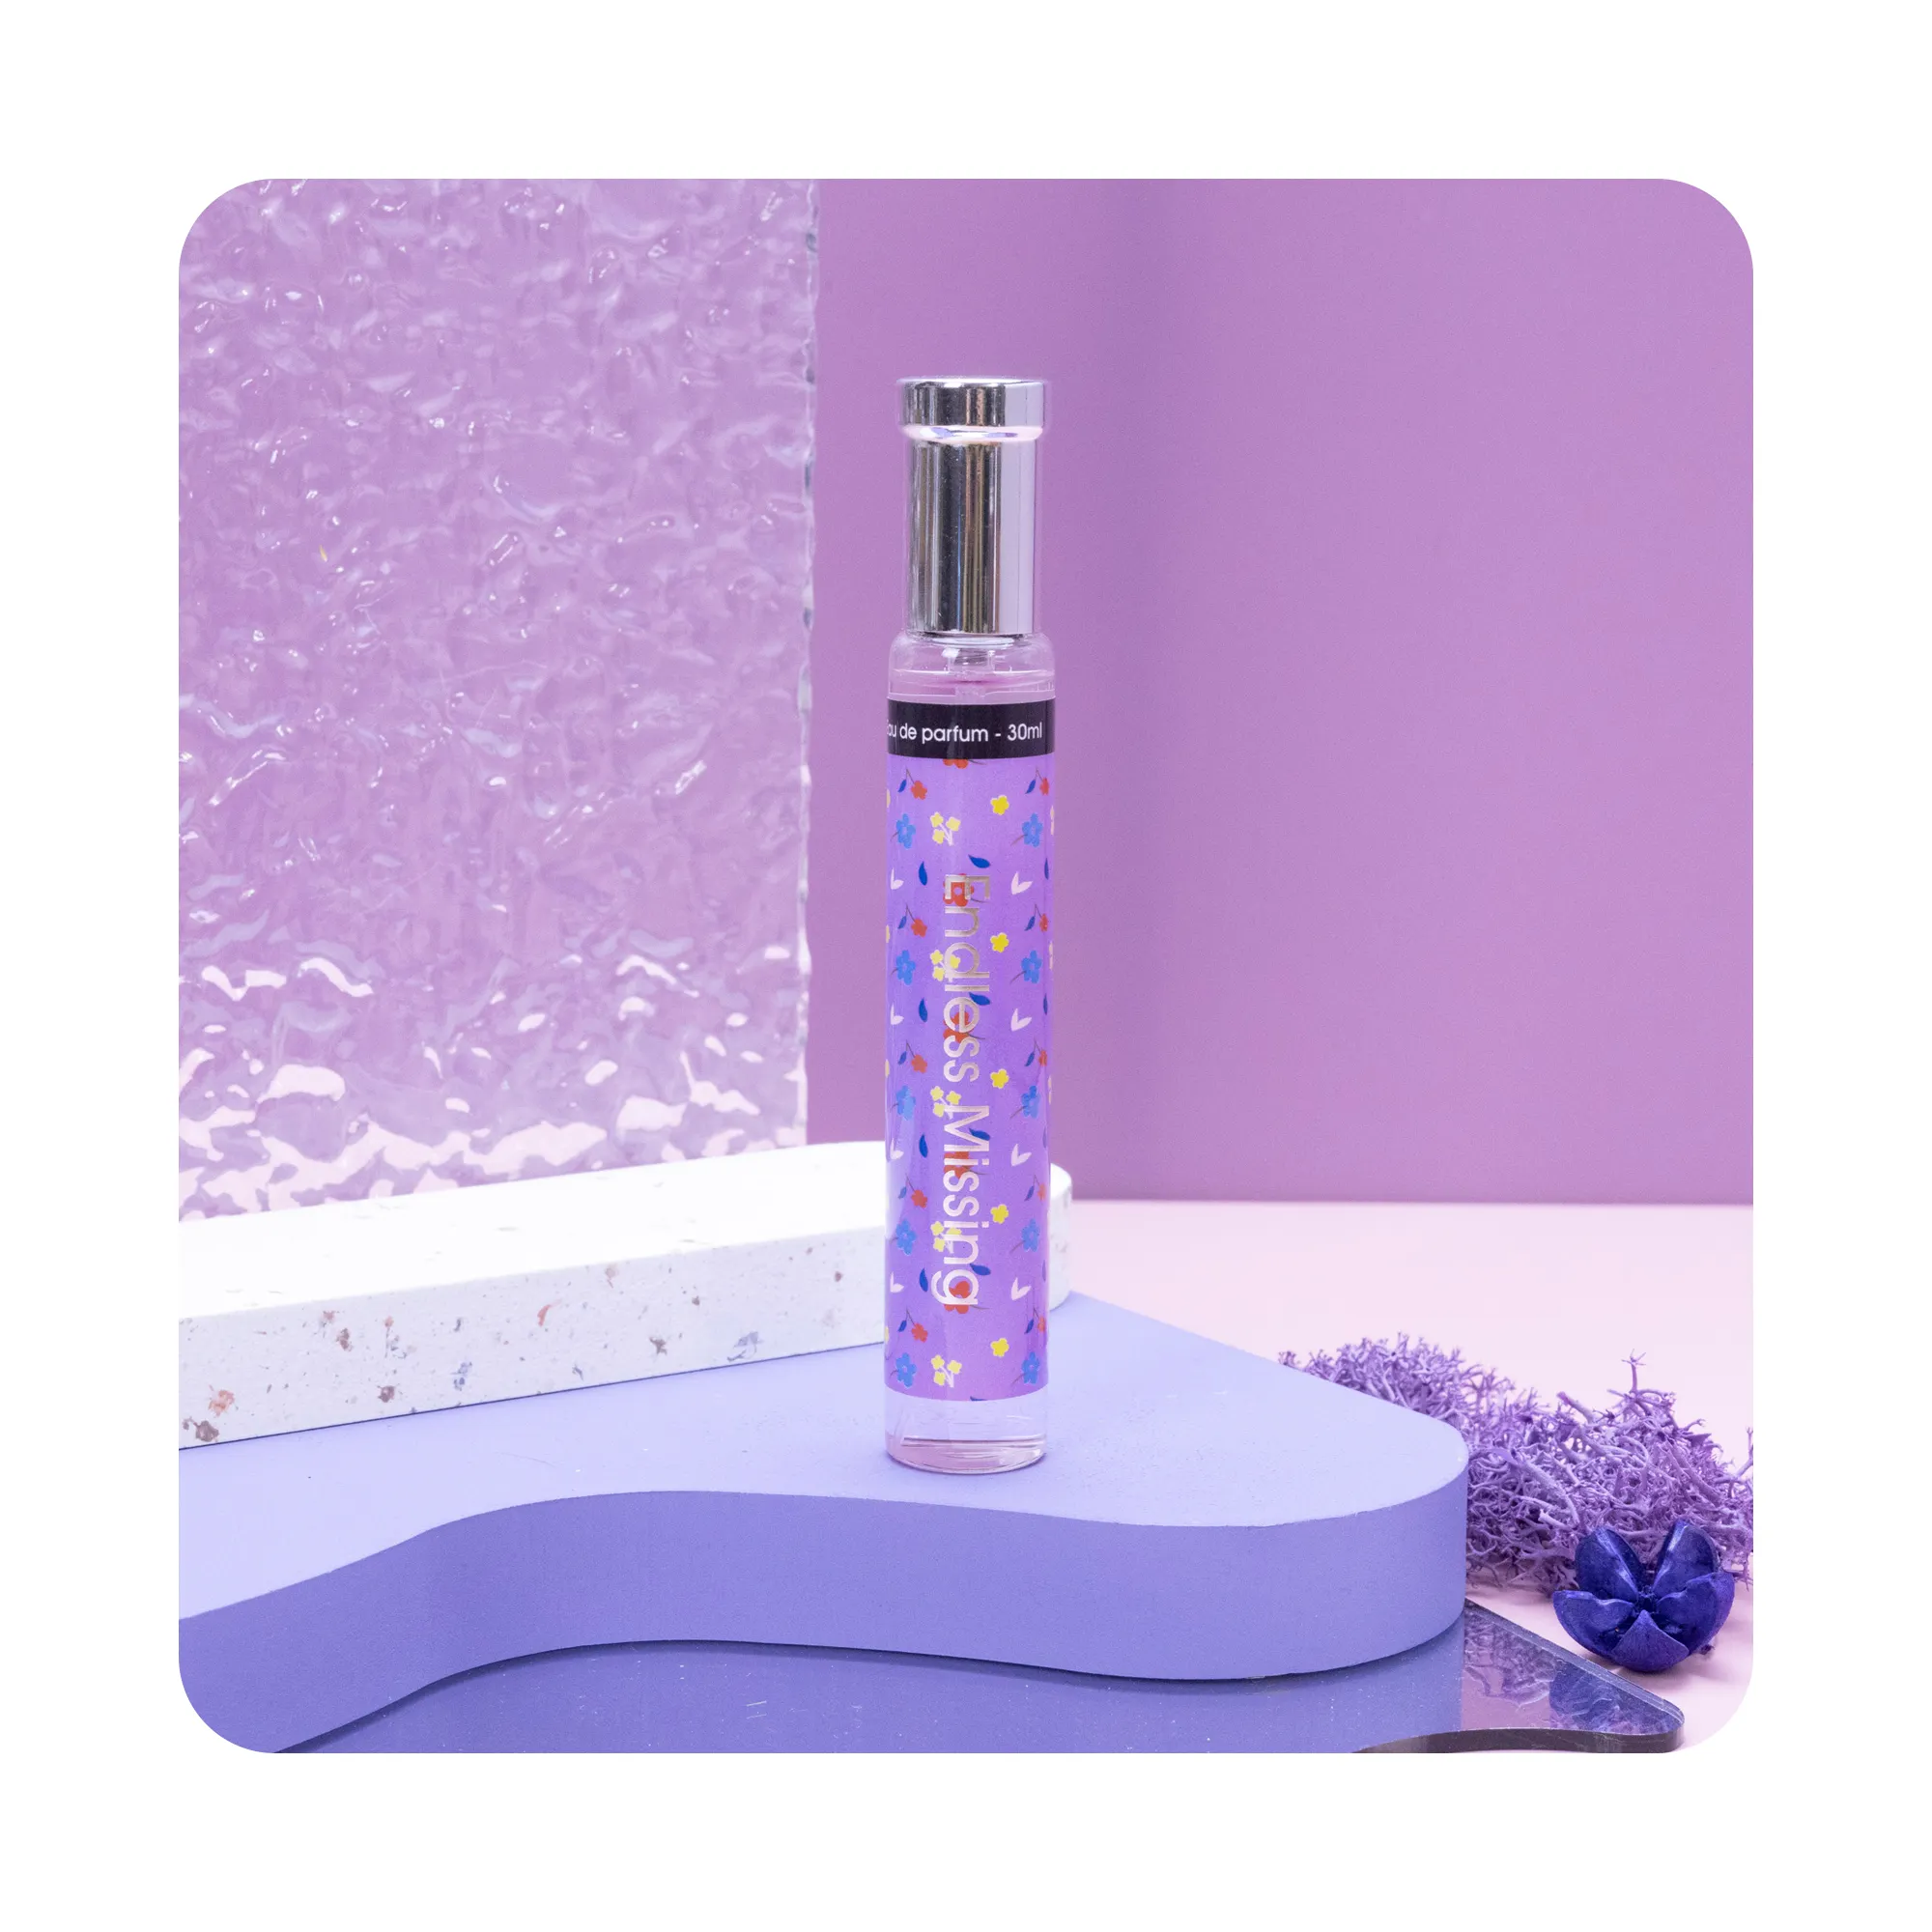 Body mist gift set for men women colour glass bottles 30ml eau de parfum